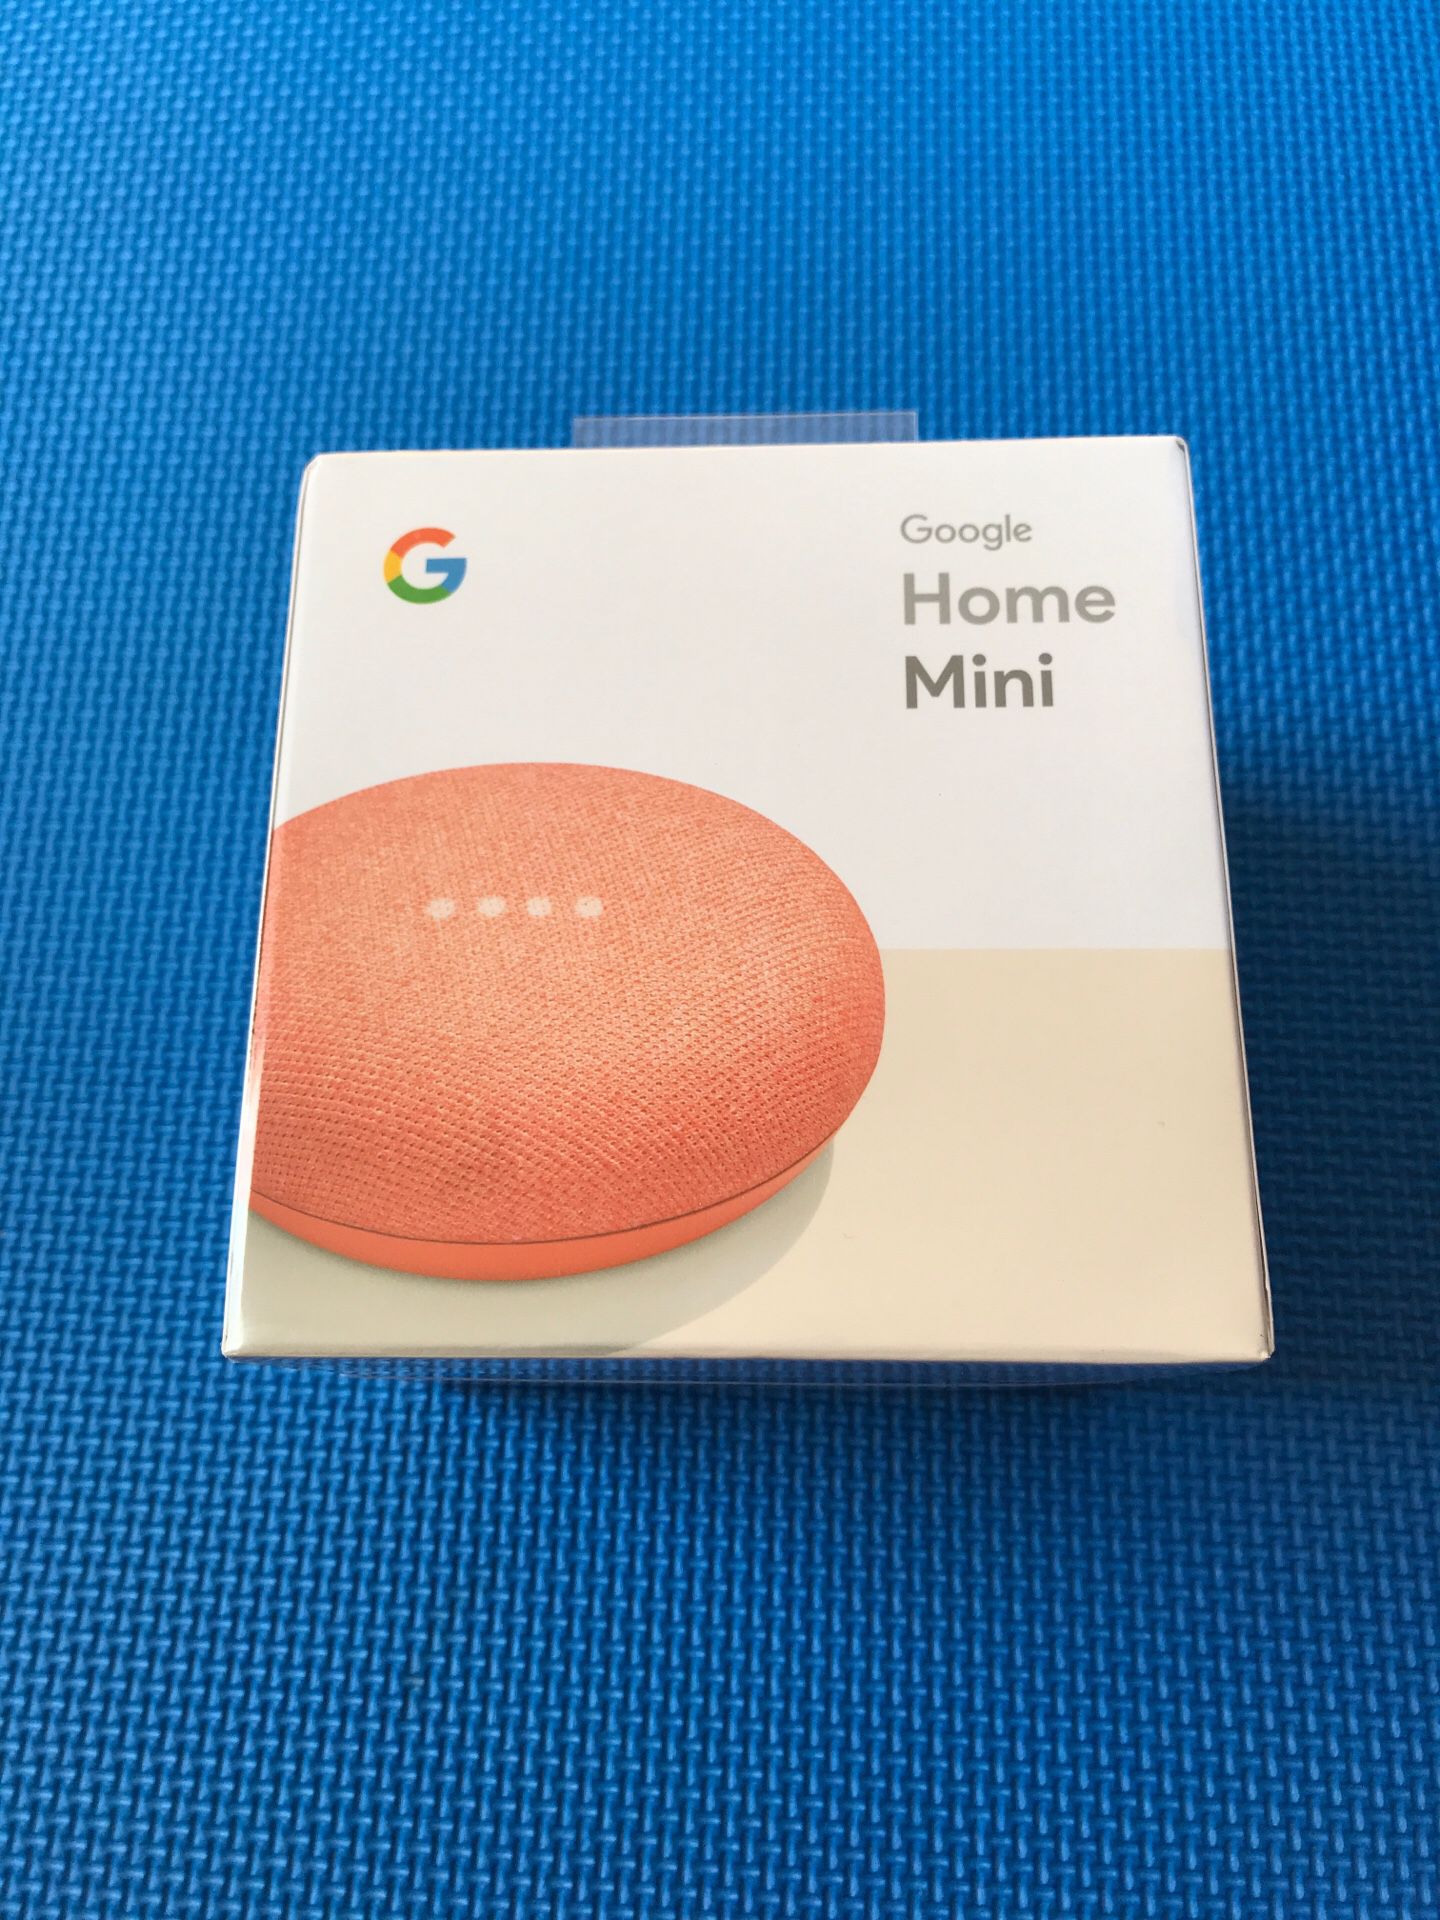 Google Home Mini - Brand new in the box